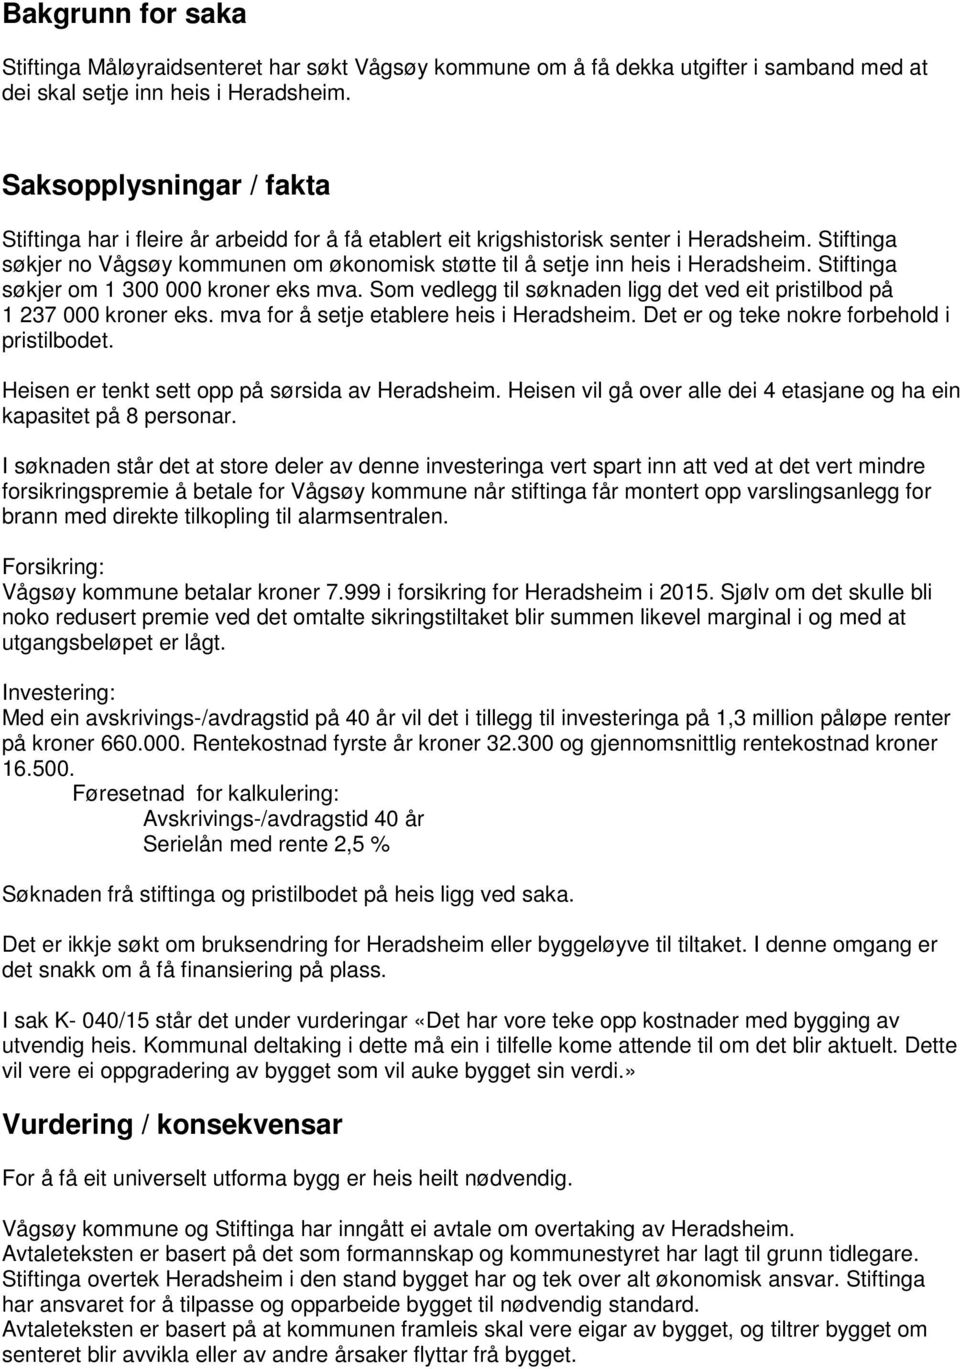 Stiftinga søkjer no Vågsøy kommunen om økonomisk støtte til å setje inn heis i Heradsheim. Stiftinga søkjer om 1 300 000 kroner eks mva.